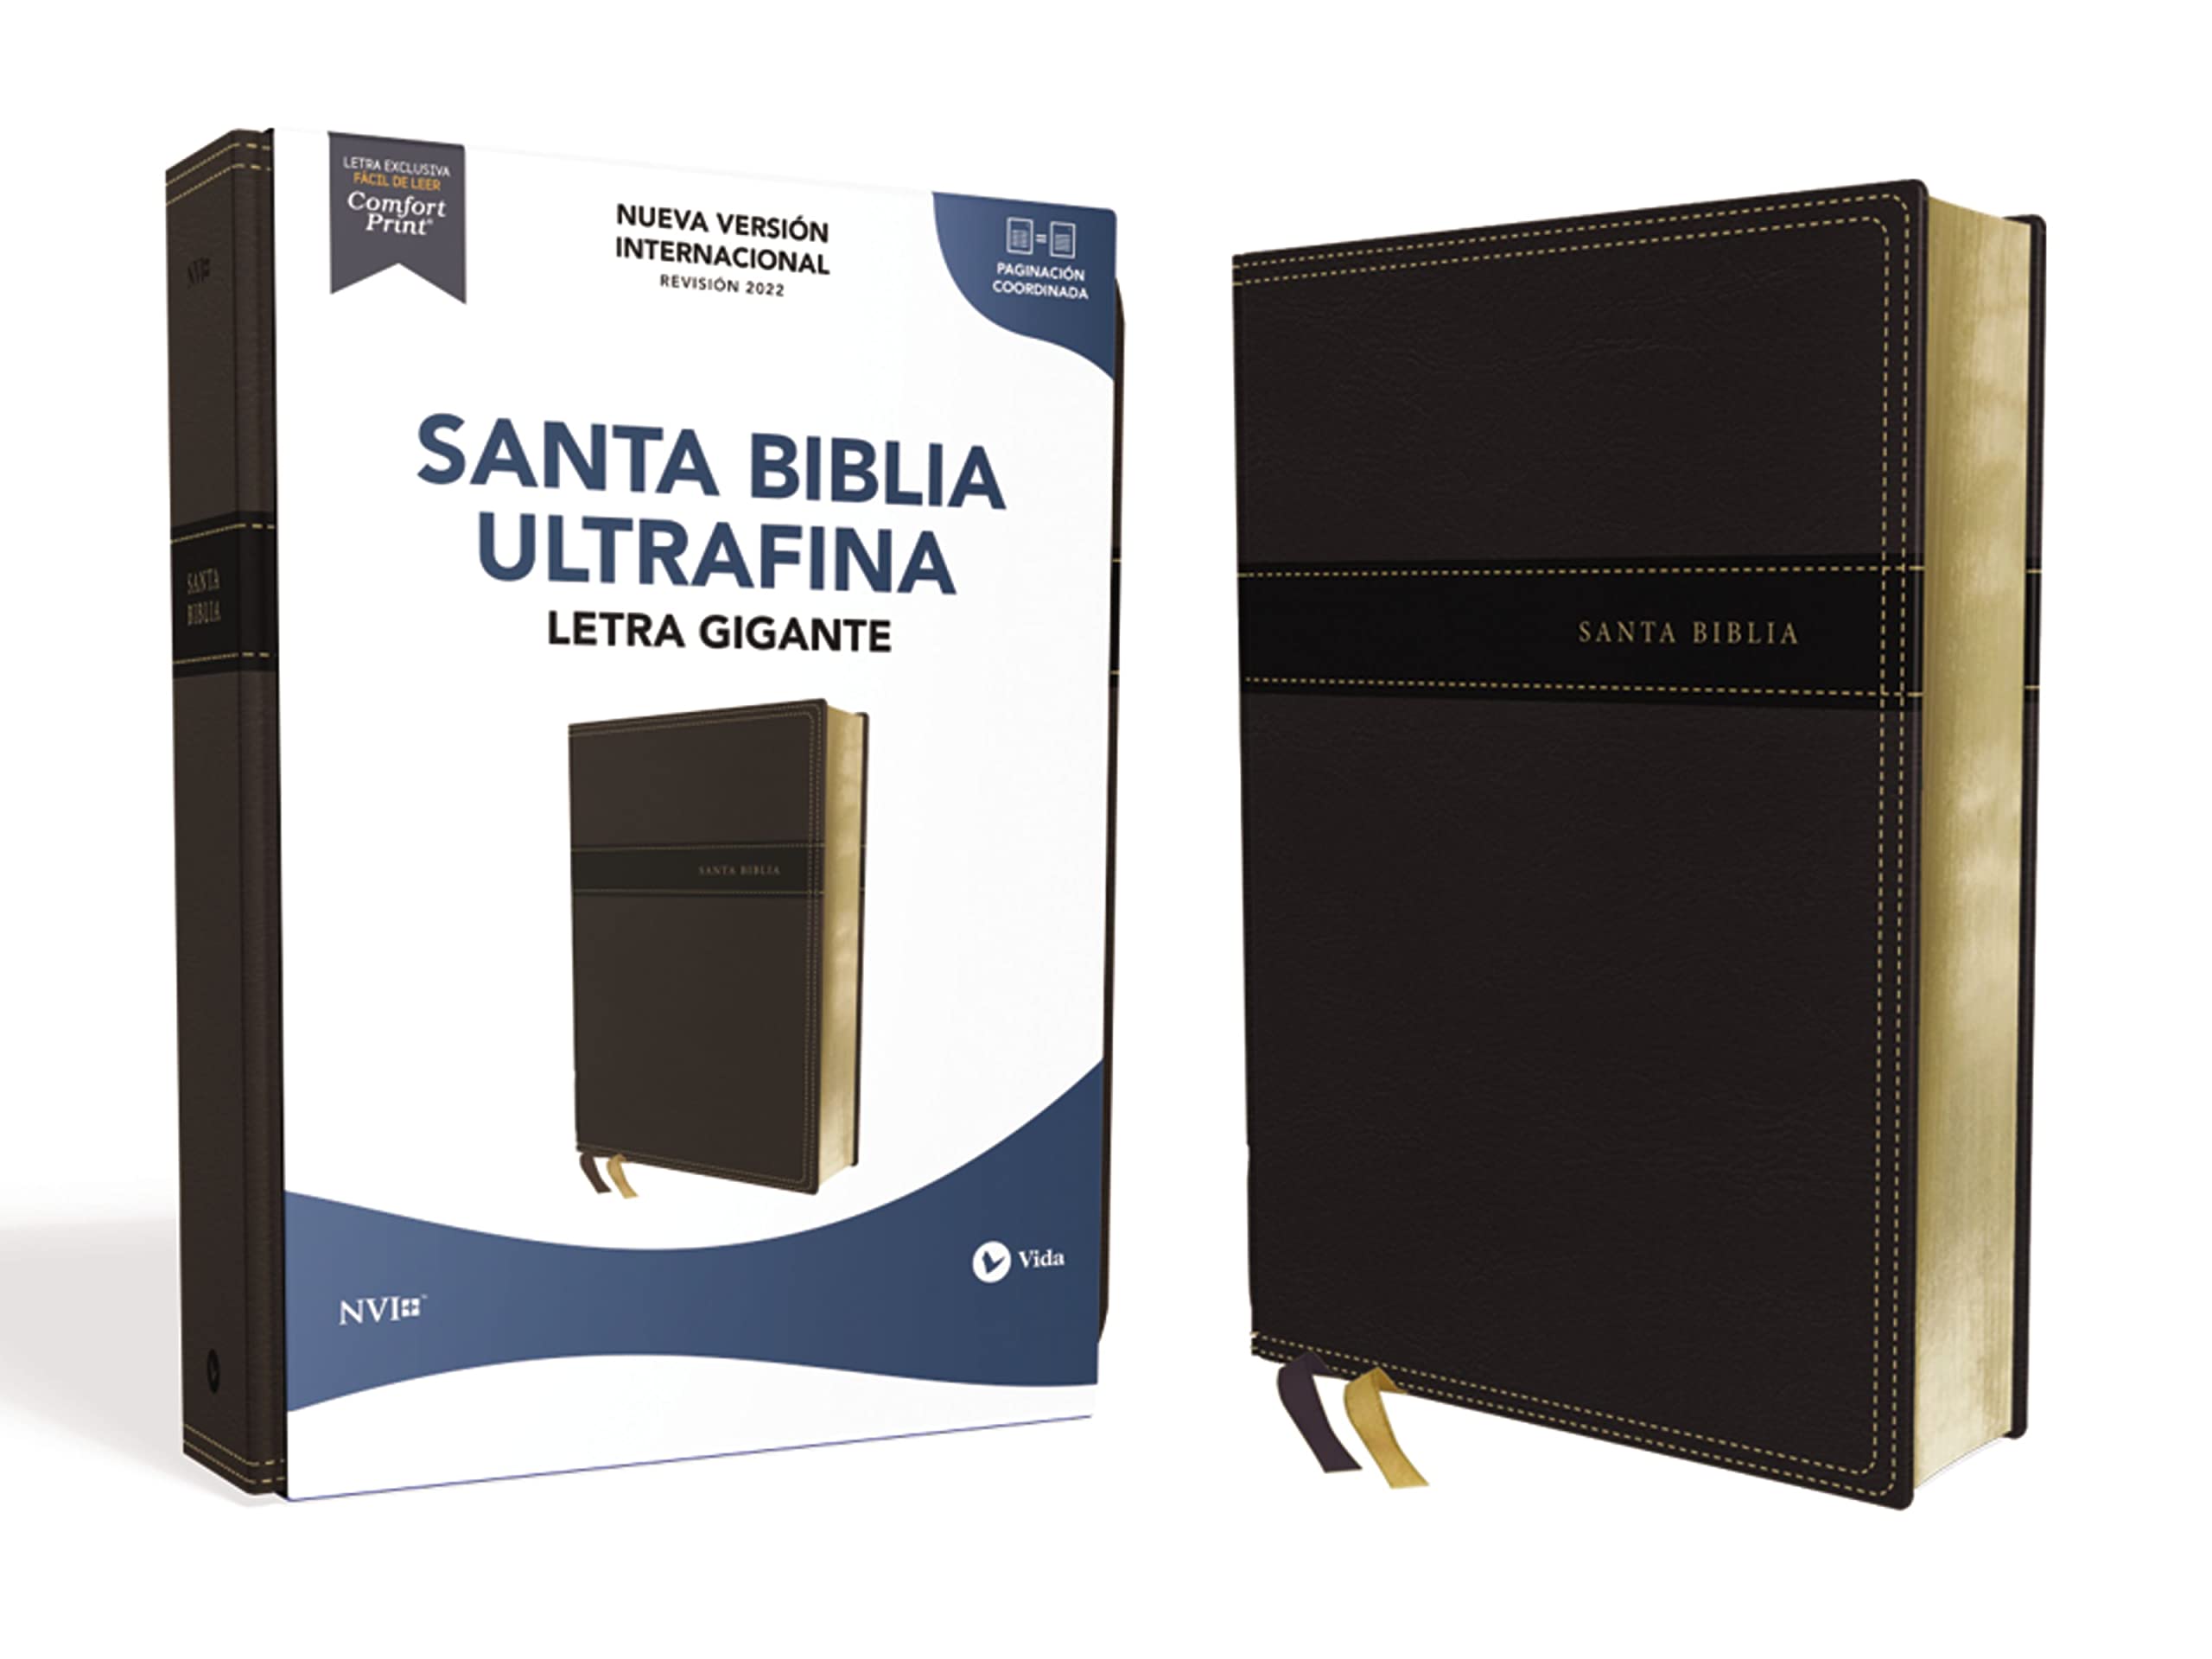 NVI, Santa Biblia, Texto revisado 2022, Ultrafina, Letra Gigante, Leathersoft, Negro, Palabras de Jesús en Rojo (Spanish Edition)